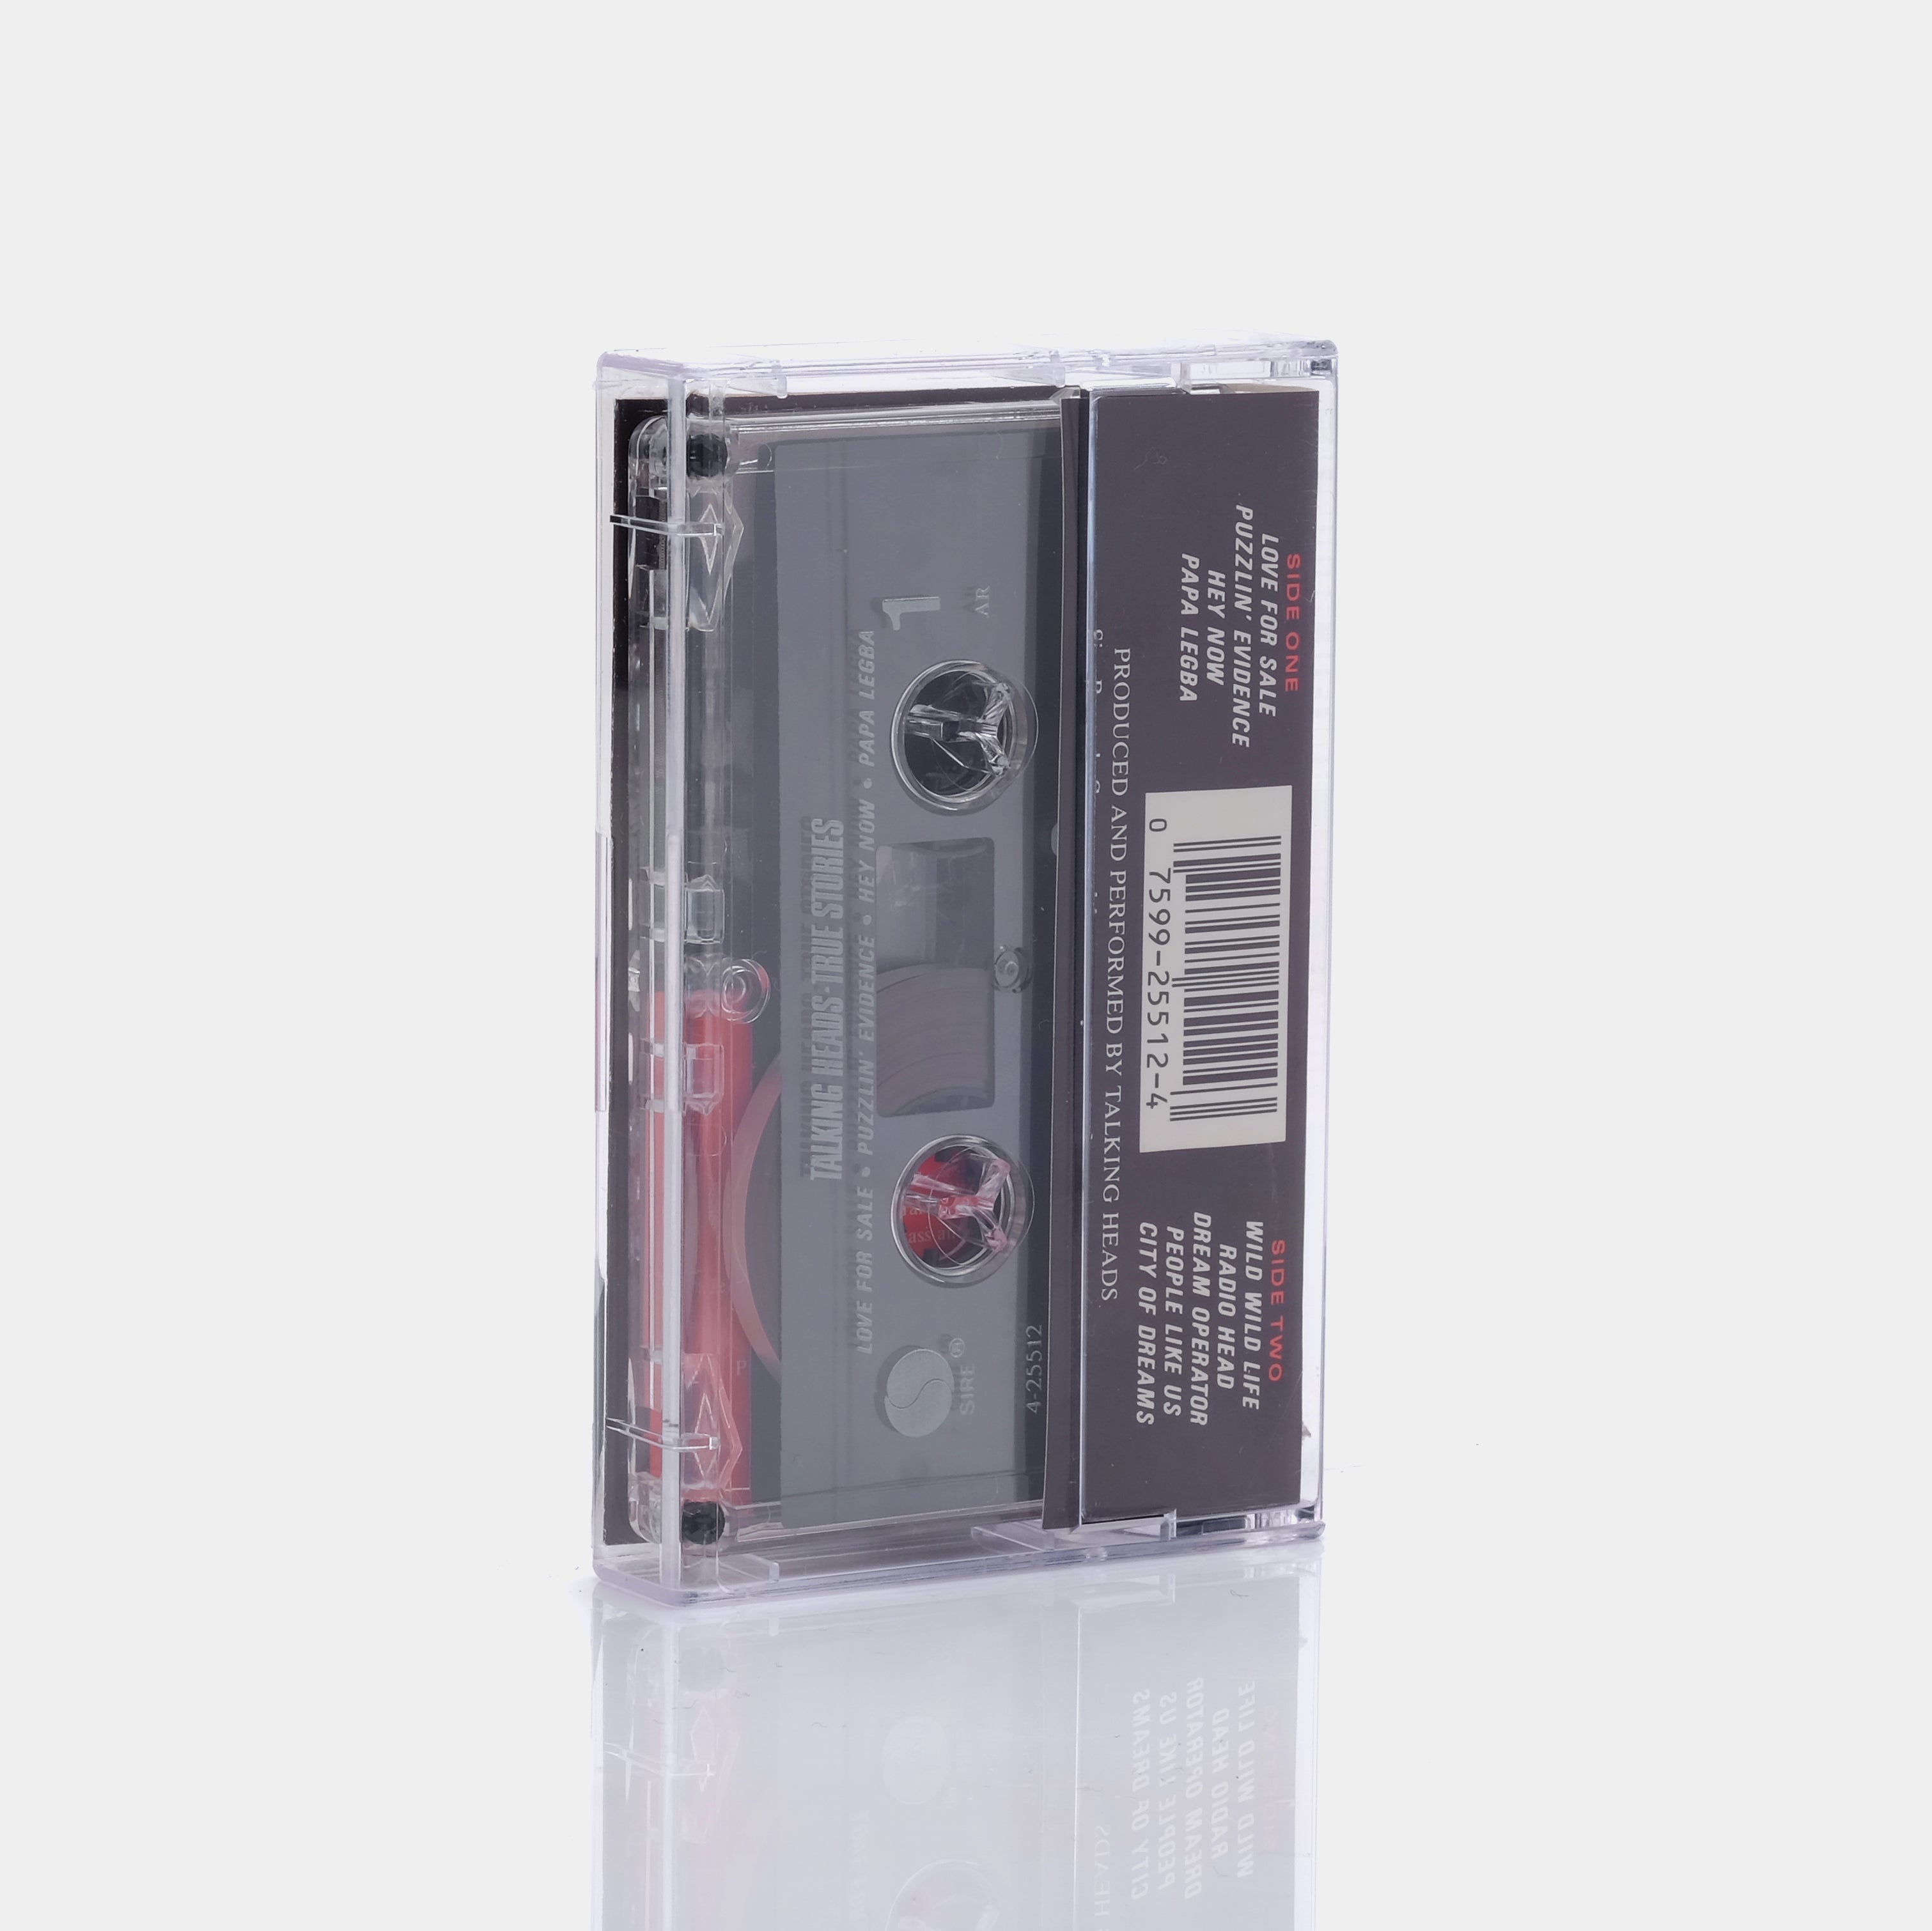 Talking Heads - True Stories Cassette Tape